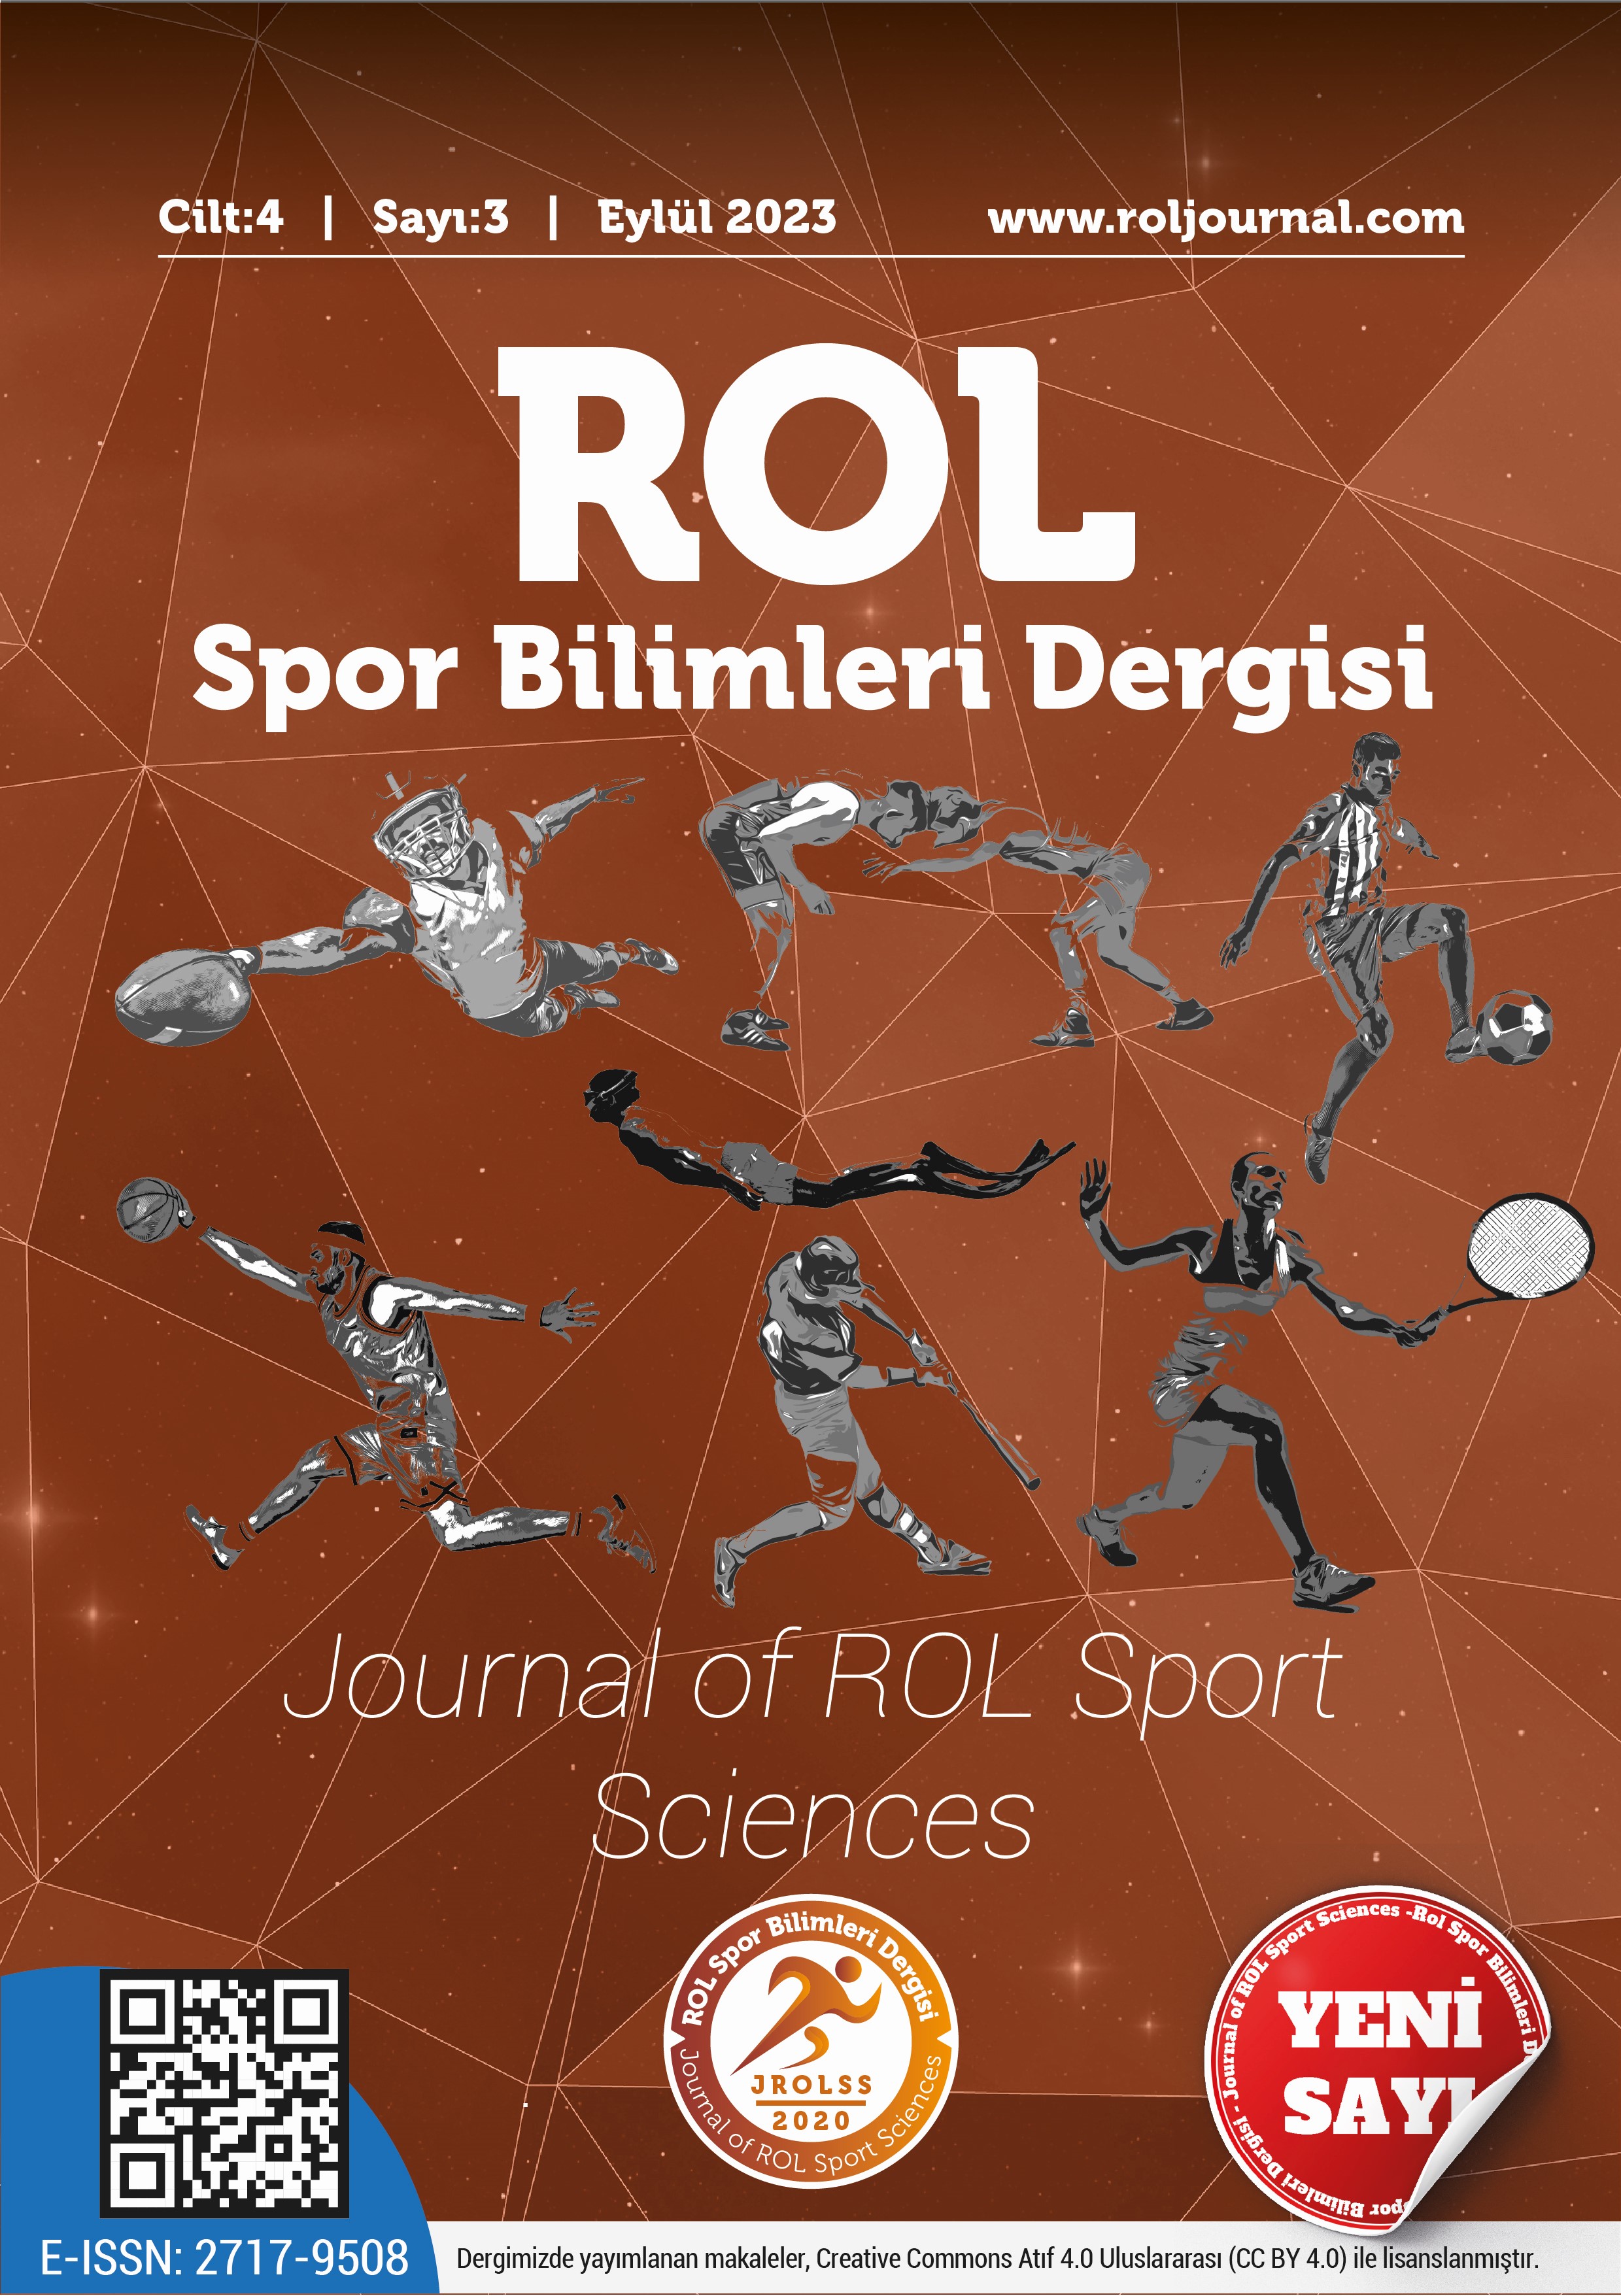 					Cilt 4 Sayı 3 (2023): ROL Spor Bilimleri Dergisi Gör
				